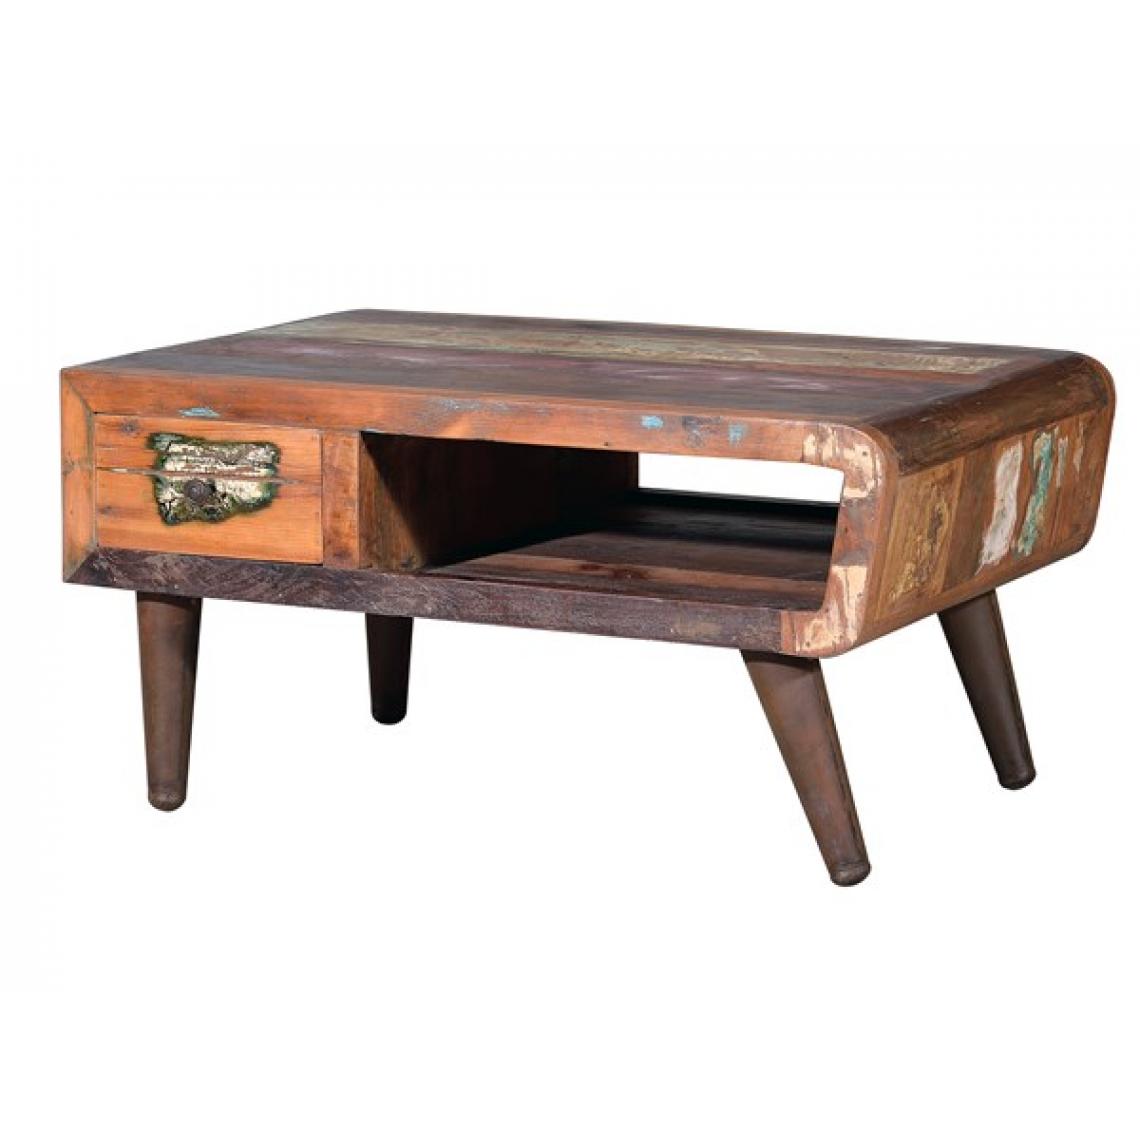 Pegane - Table basse en bois recyclé coloris naturel - longueur 90 x profondeur 60 x hauteur 45 cm - Tables basses